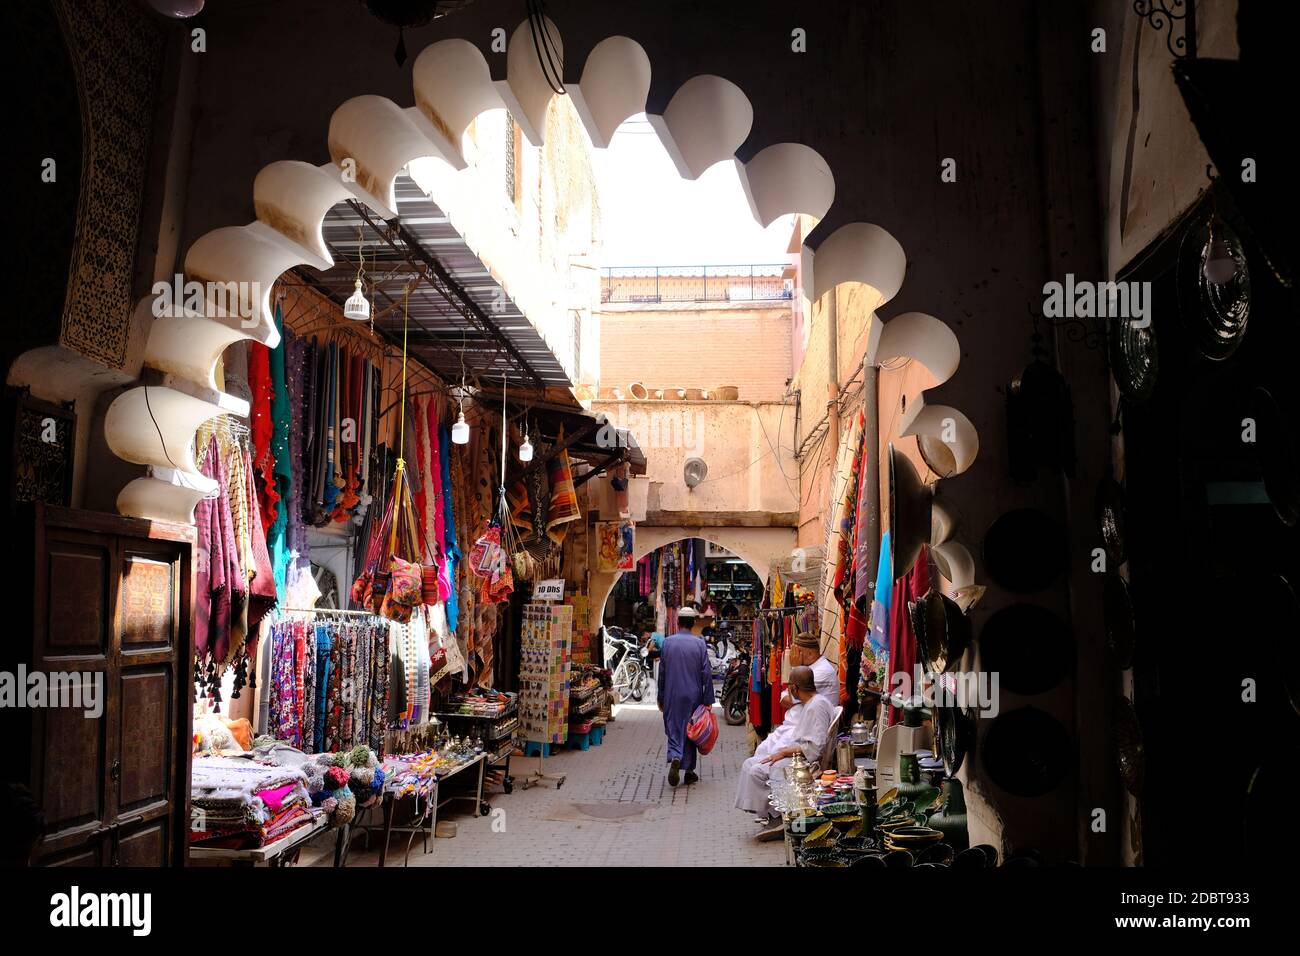 Morocco Marrakesh - Street view of Medina narrow trading streets Stock Photo